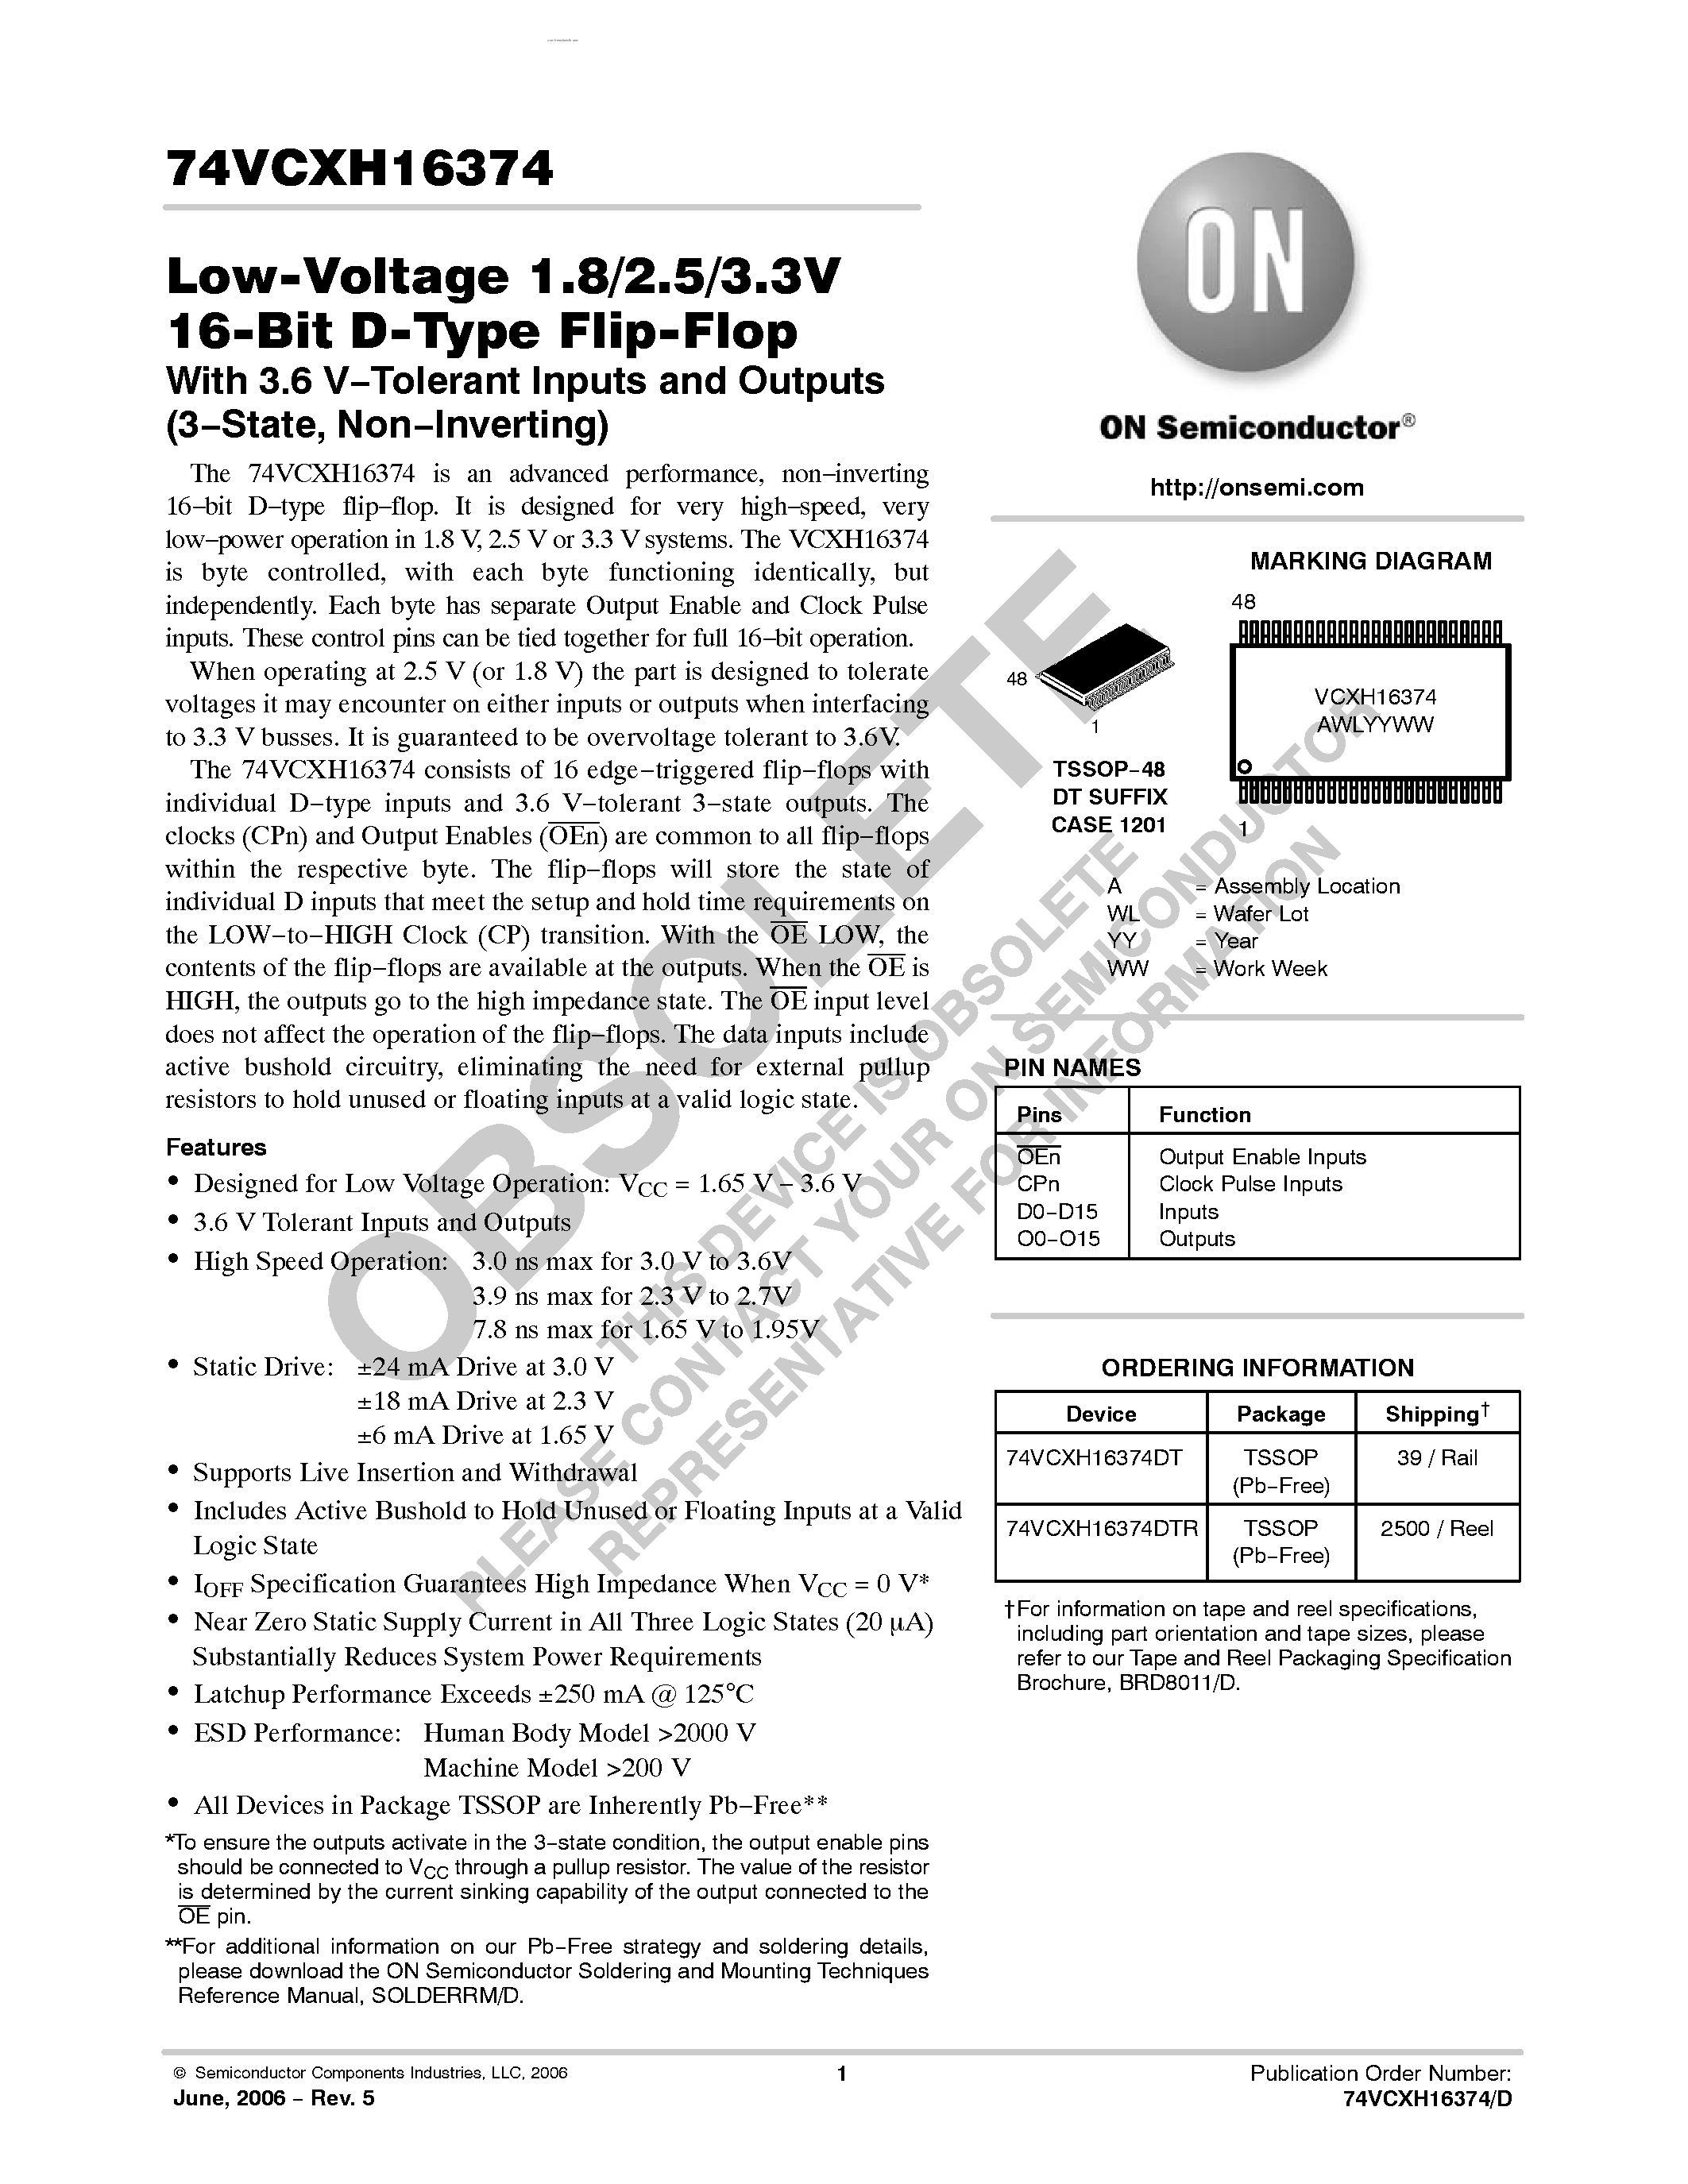 Даташит 74VCXH16374 - Low-Voltage 1.8/2.5/3.3V 16-Bit D-Type Flip-Flop страница 1